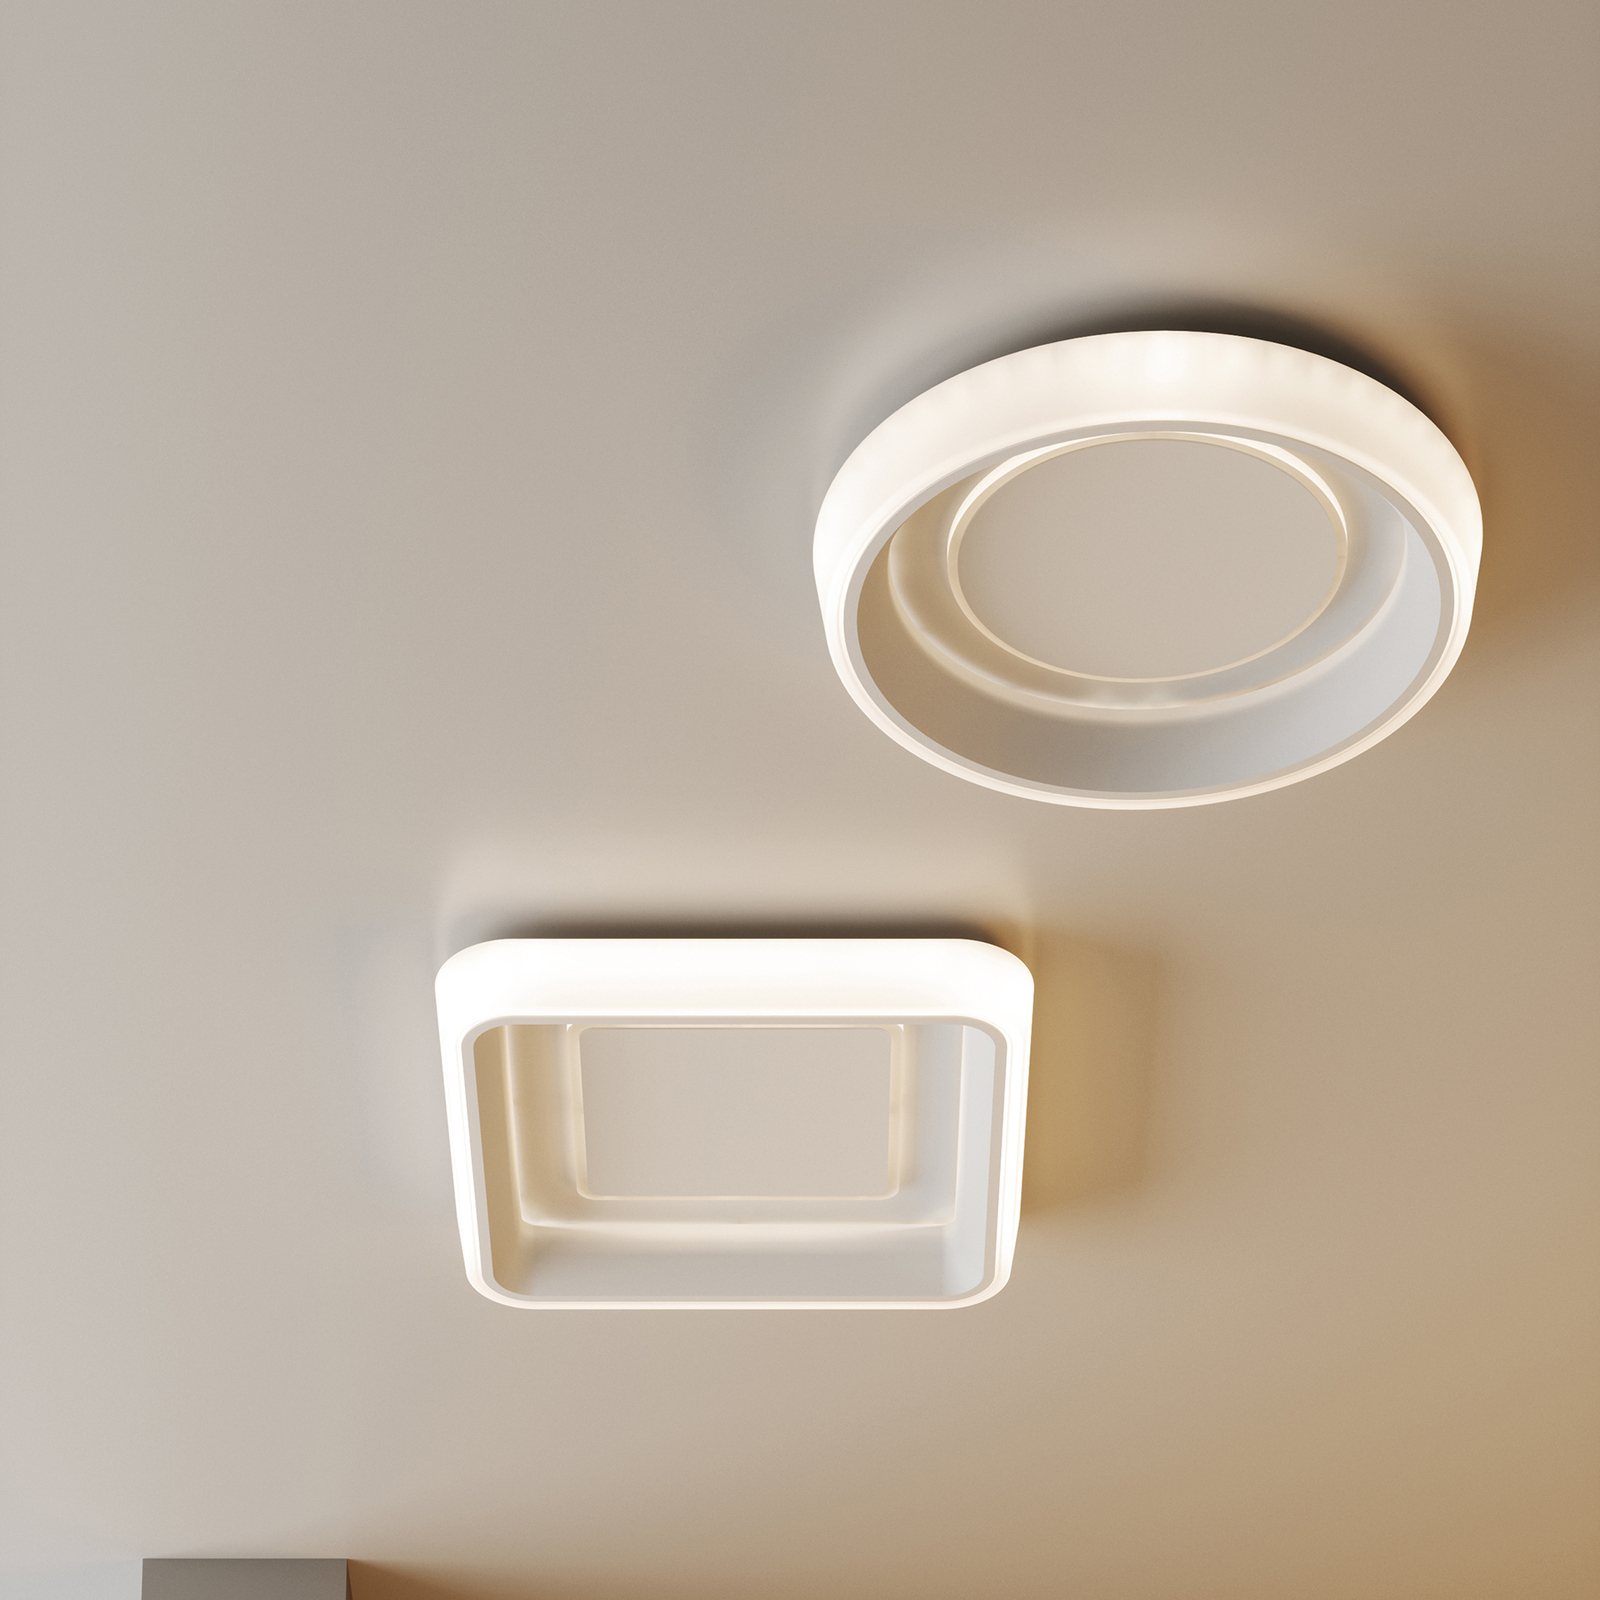 Lampa sufitowa LED Nurax, z możliwością wyboru barwy światła, kątowa